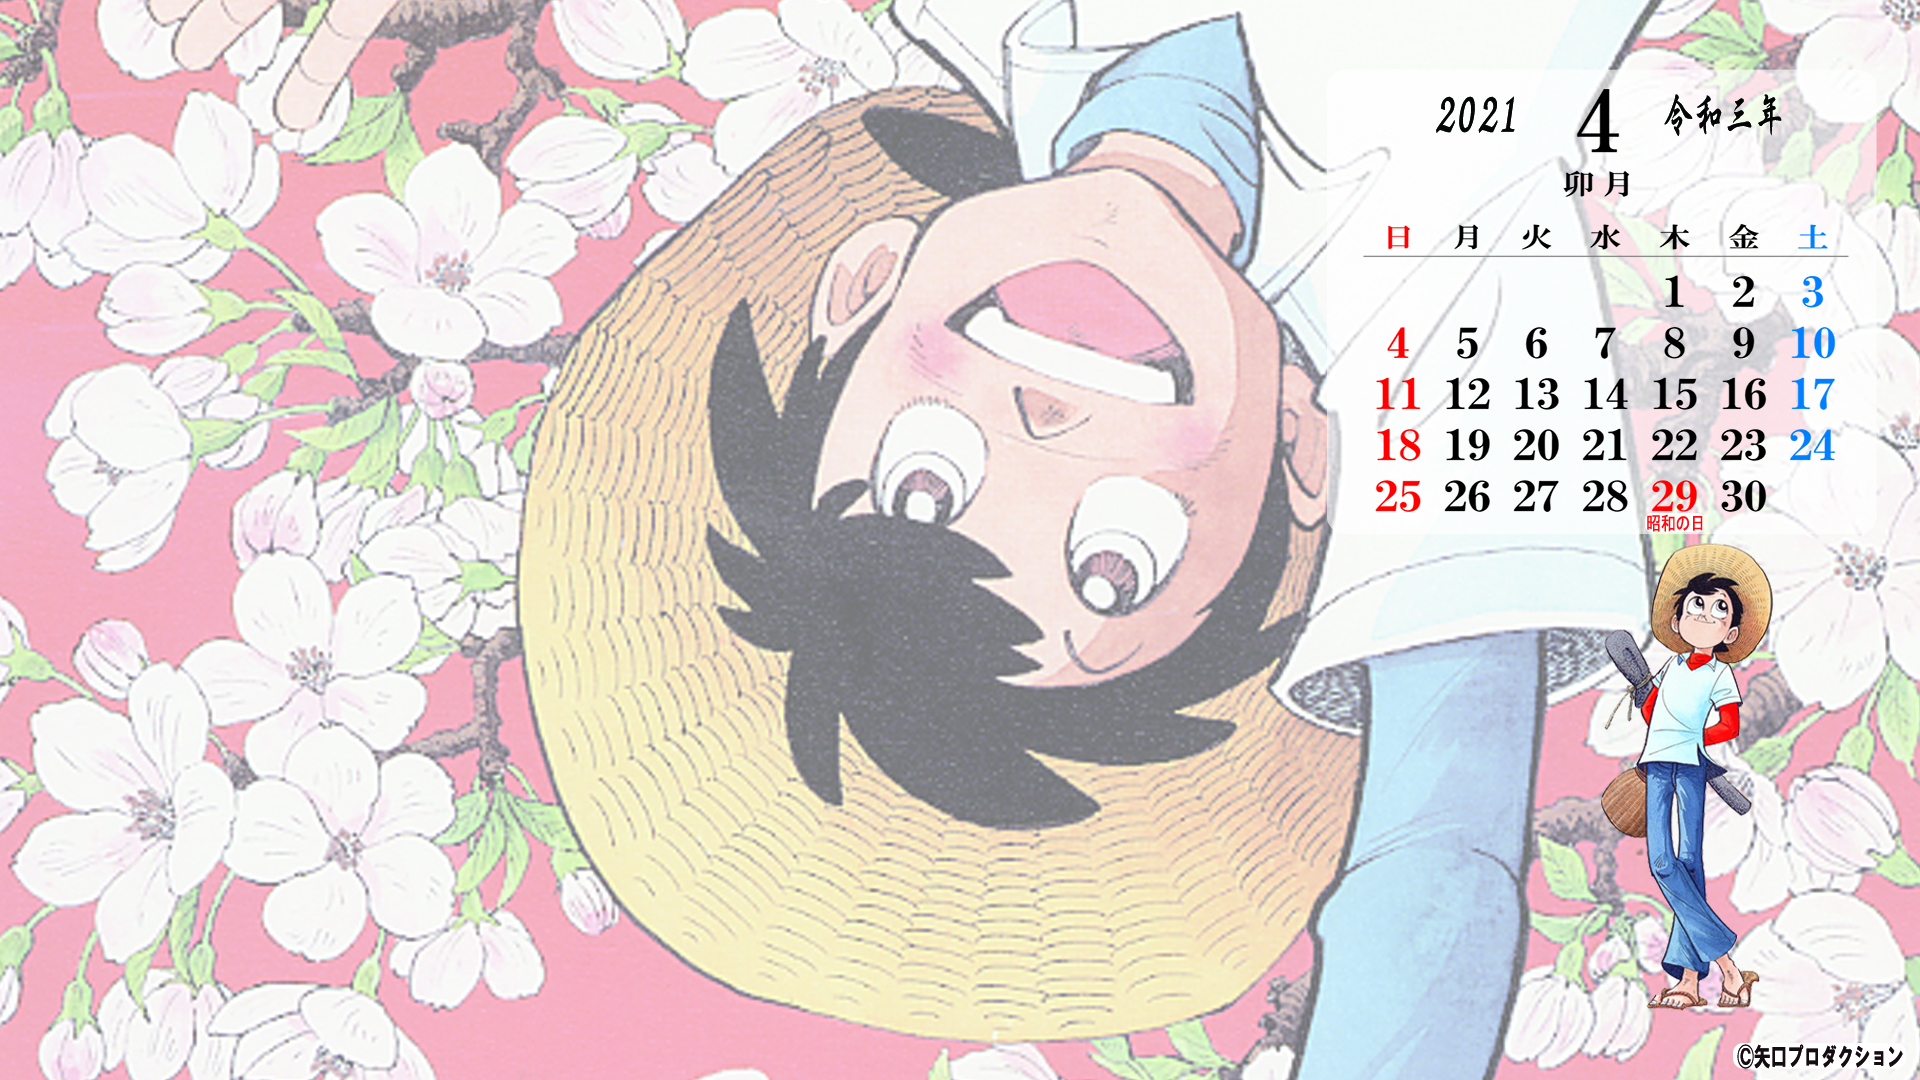 21年4月のスマホ Pc カレンダー壁紙プレゼント 矢口高雄 公式ホームページ